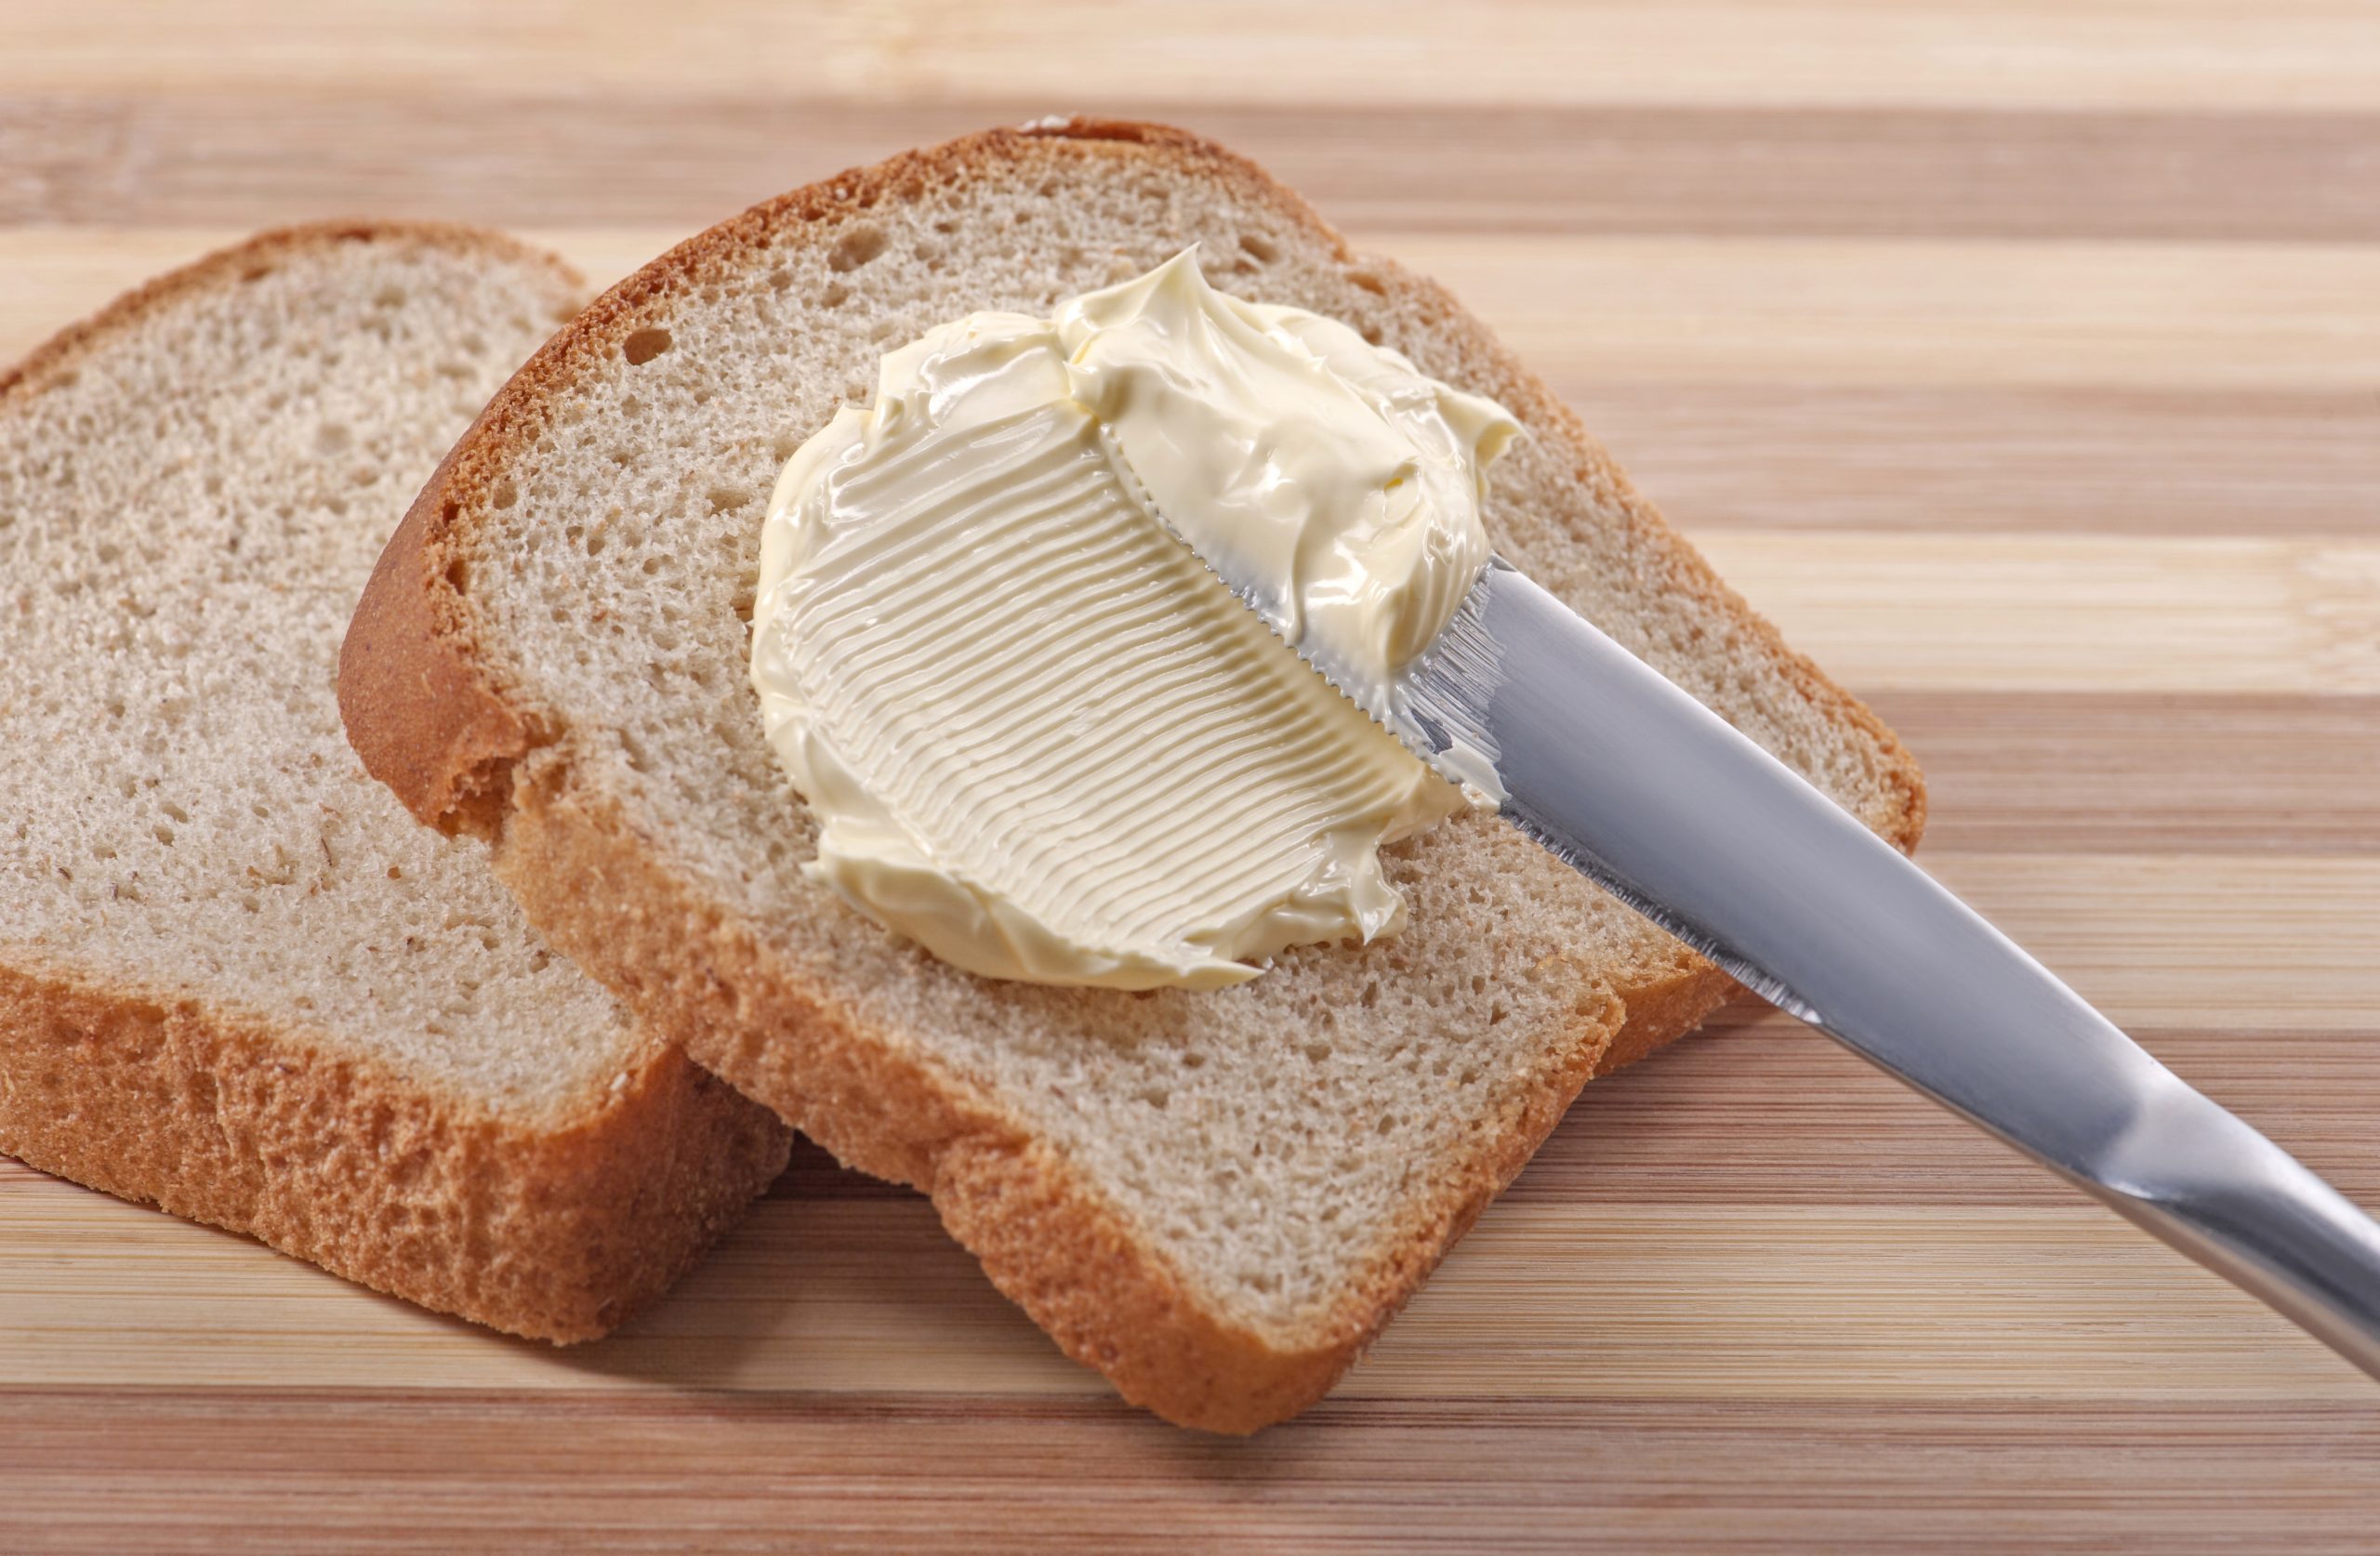 Хлеб с маслом можно есть. Бутерброд с маслом. Хлеб с маслом. Бутерброд хлеб с маслом. Бутерброд со сливочным маслом.